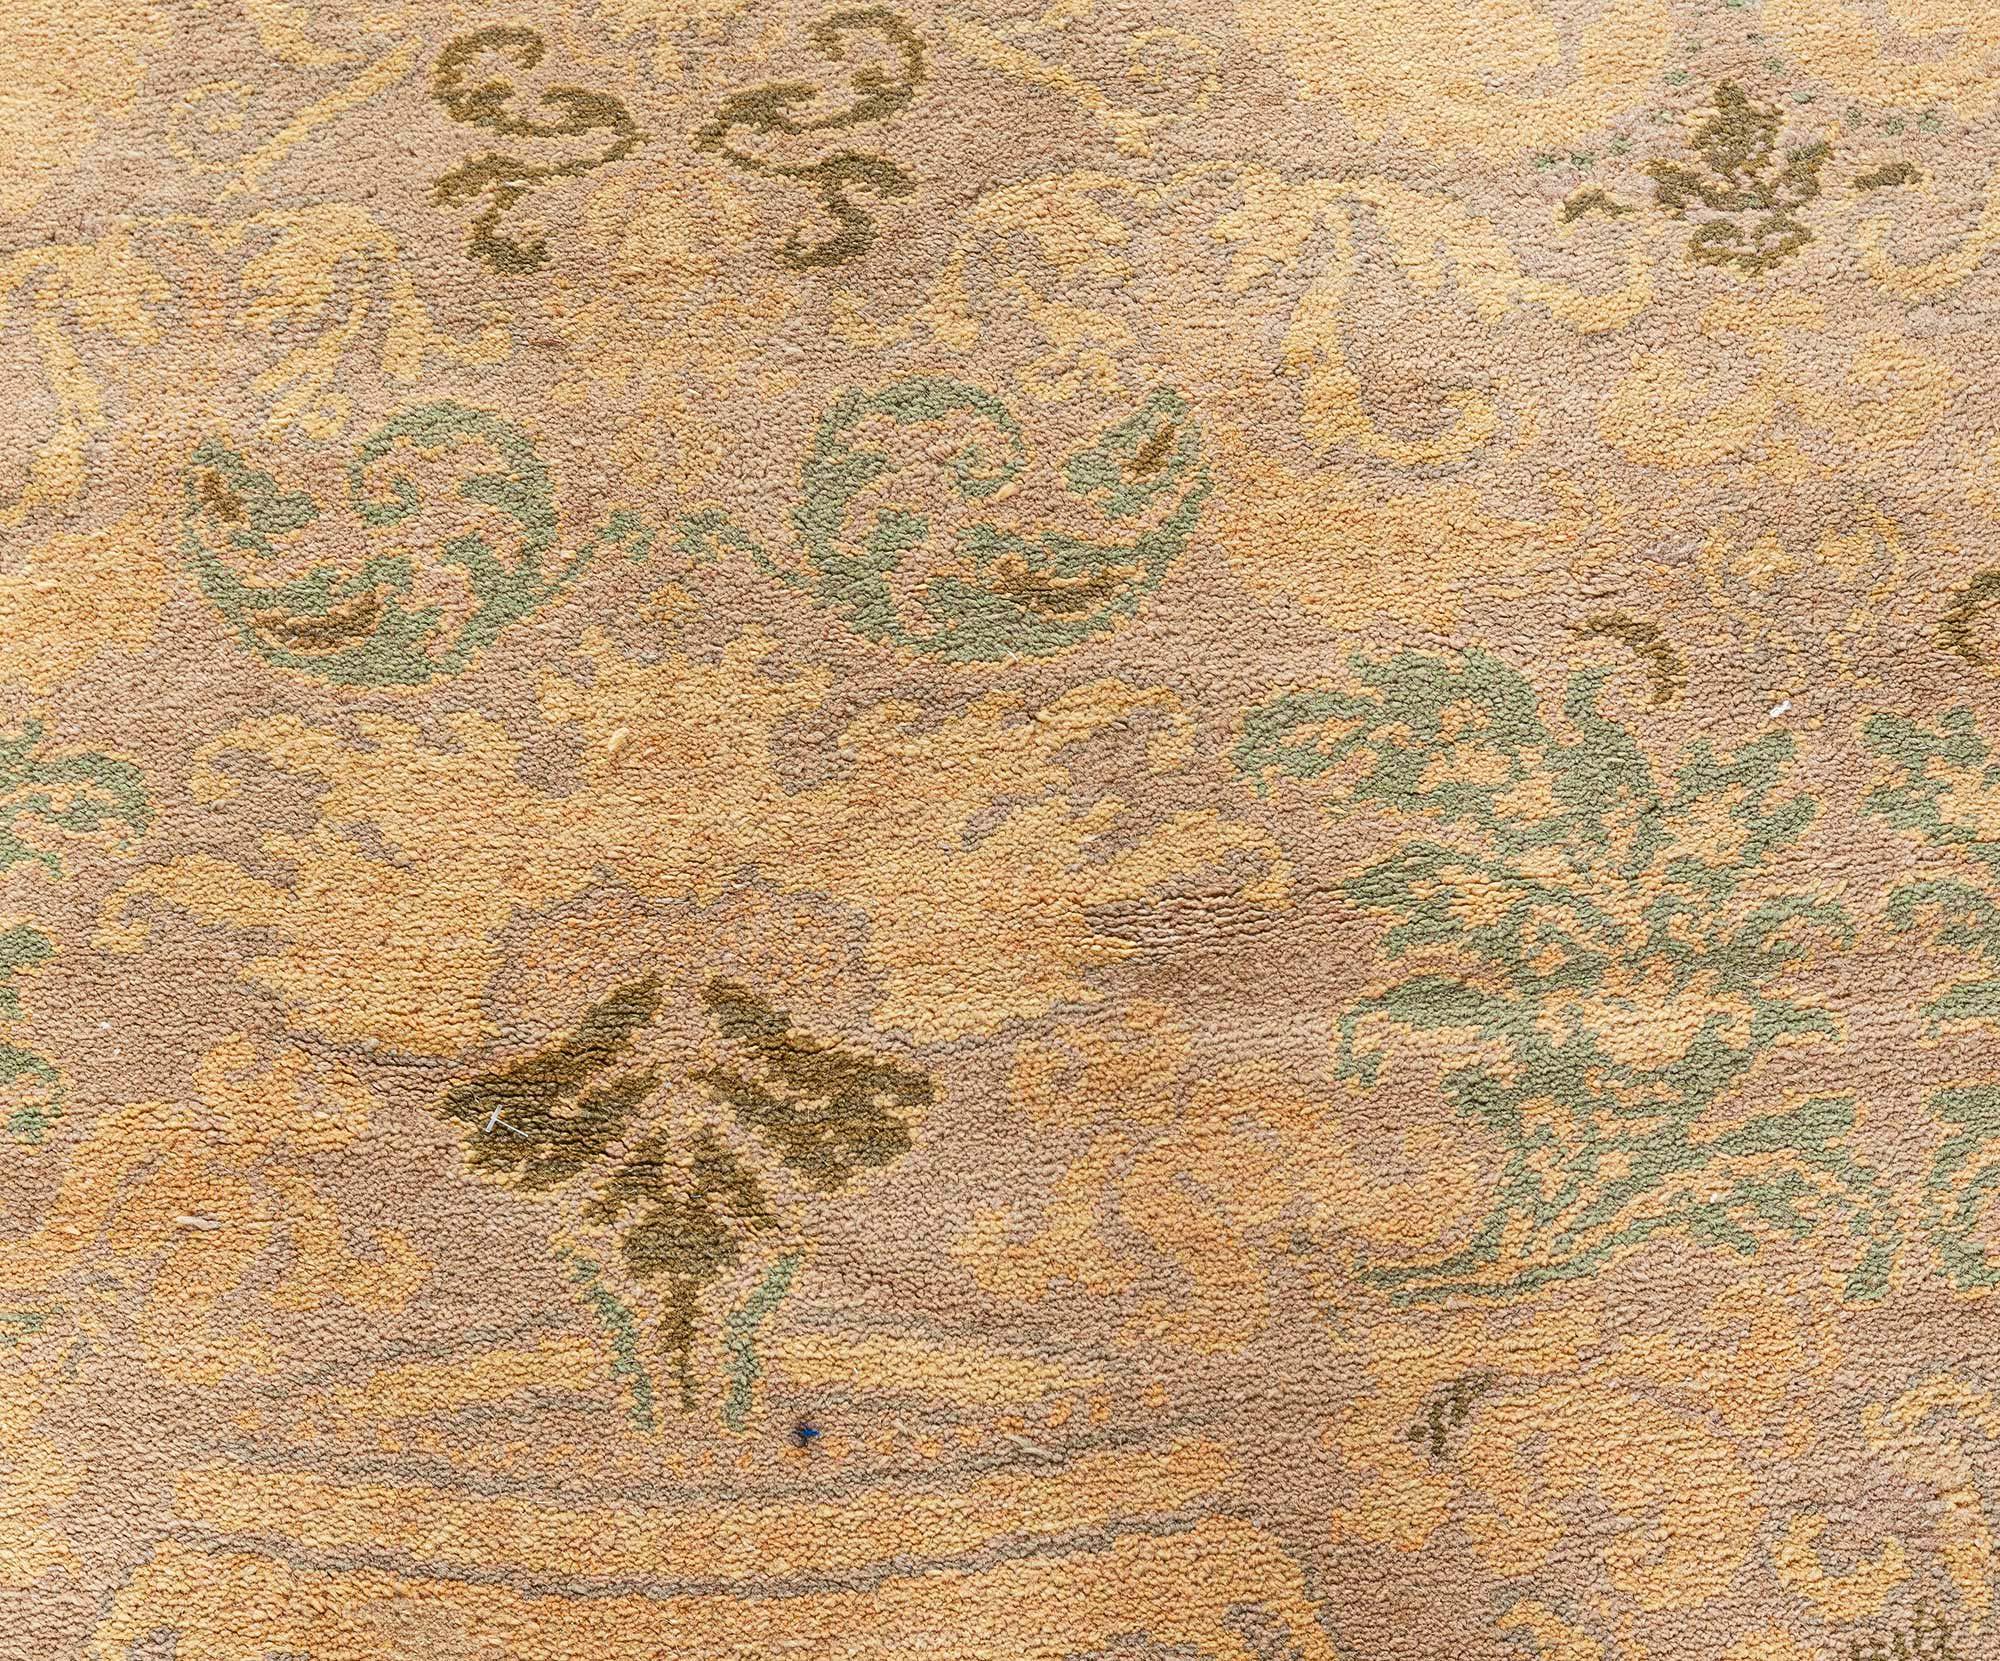 Large vintage Spanish rug
Size: 14'6